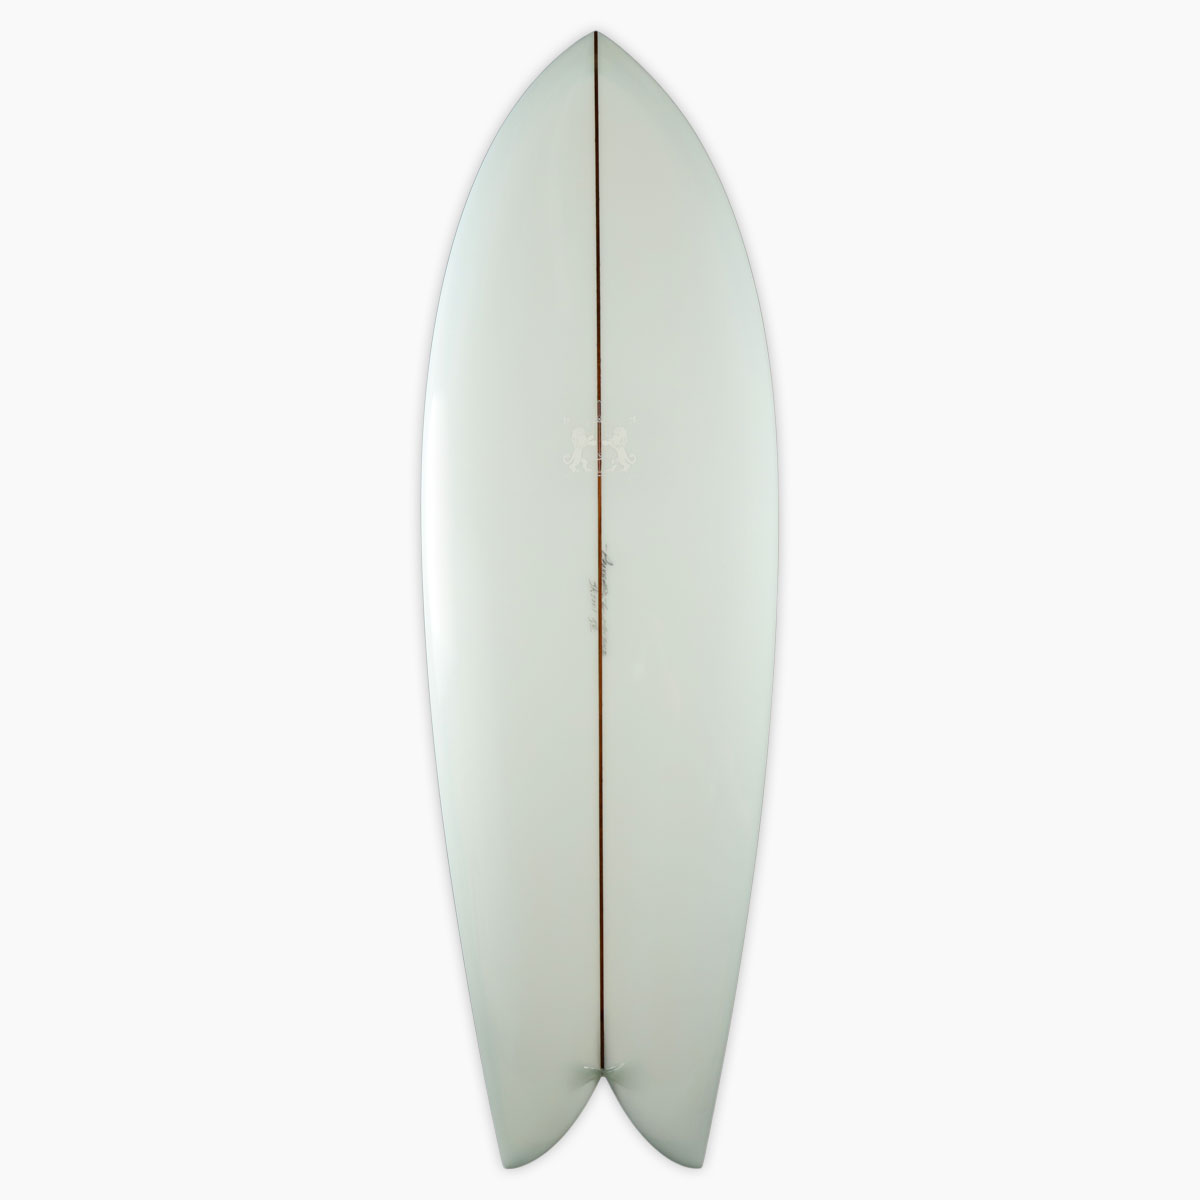 ラリー メイビル サーフボード クラッシック フィッシュ LARRY MABILE SURFBOARD CLASSIC FISH 5'6'' フィッシュ 即納